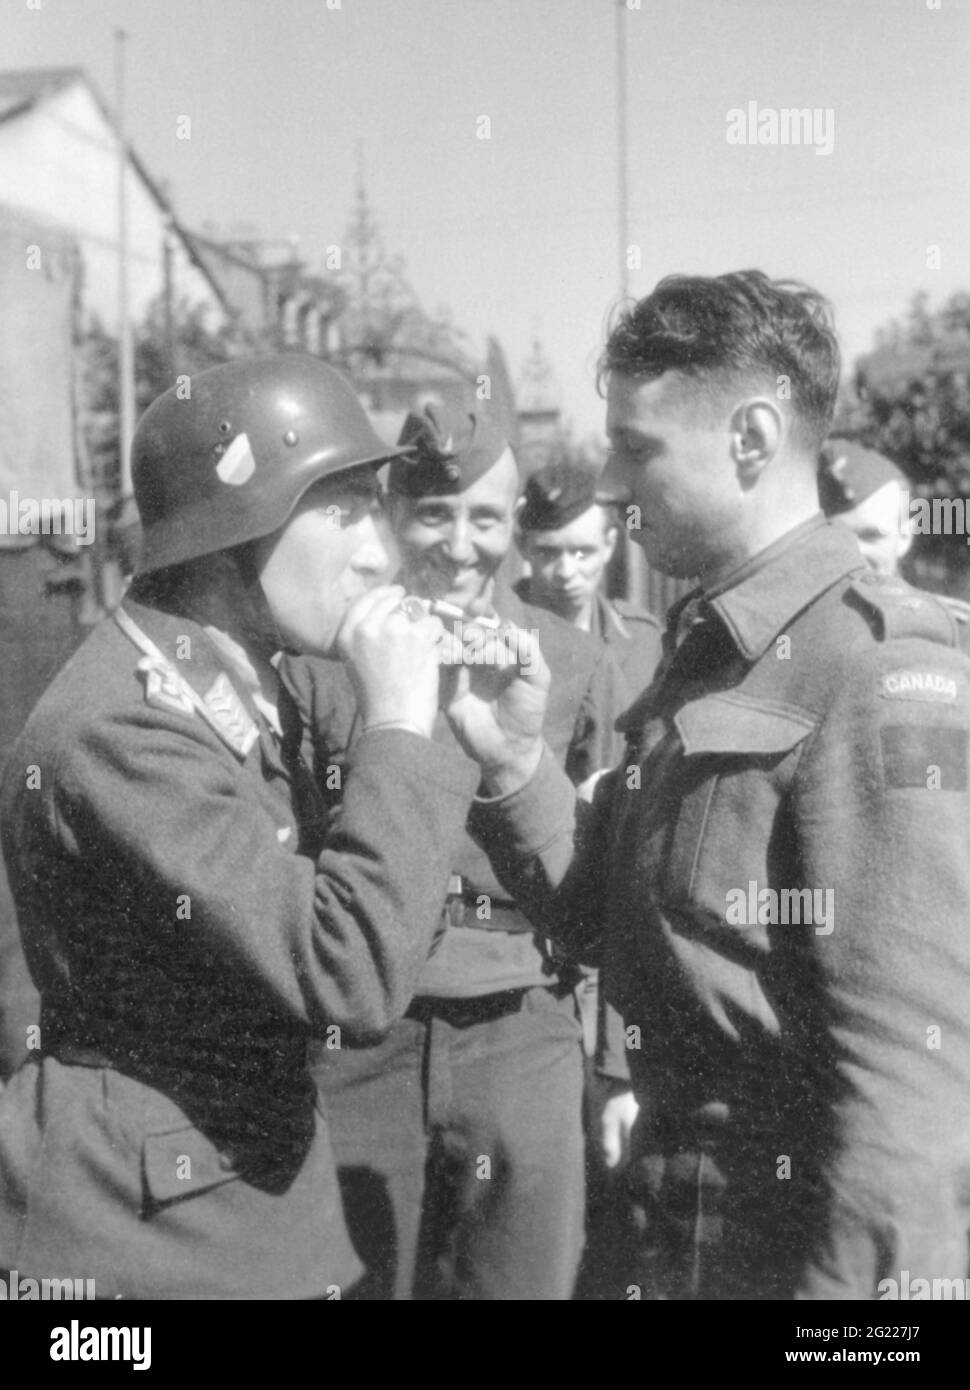 Eventi, seconda guerra mondiale / seconda guerra mondiale, Francia, Dieppe, 19.8.1942, sergente tedesca con un ufficiale canadese catturato, sigaretta illuminazione, EDITORIALE-USO-SOLO Foto Stock